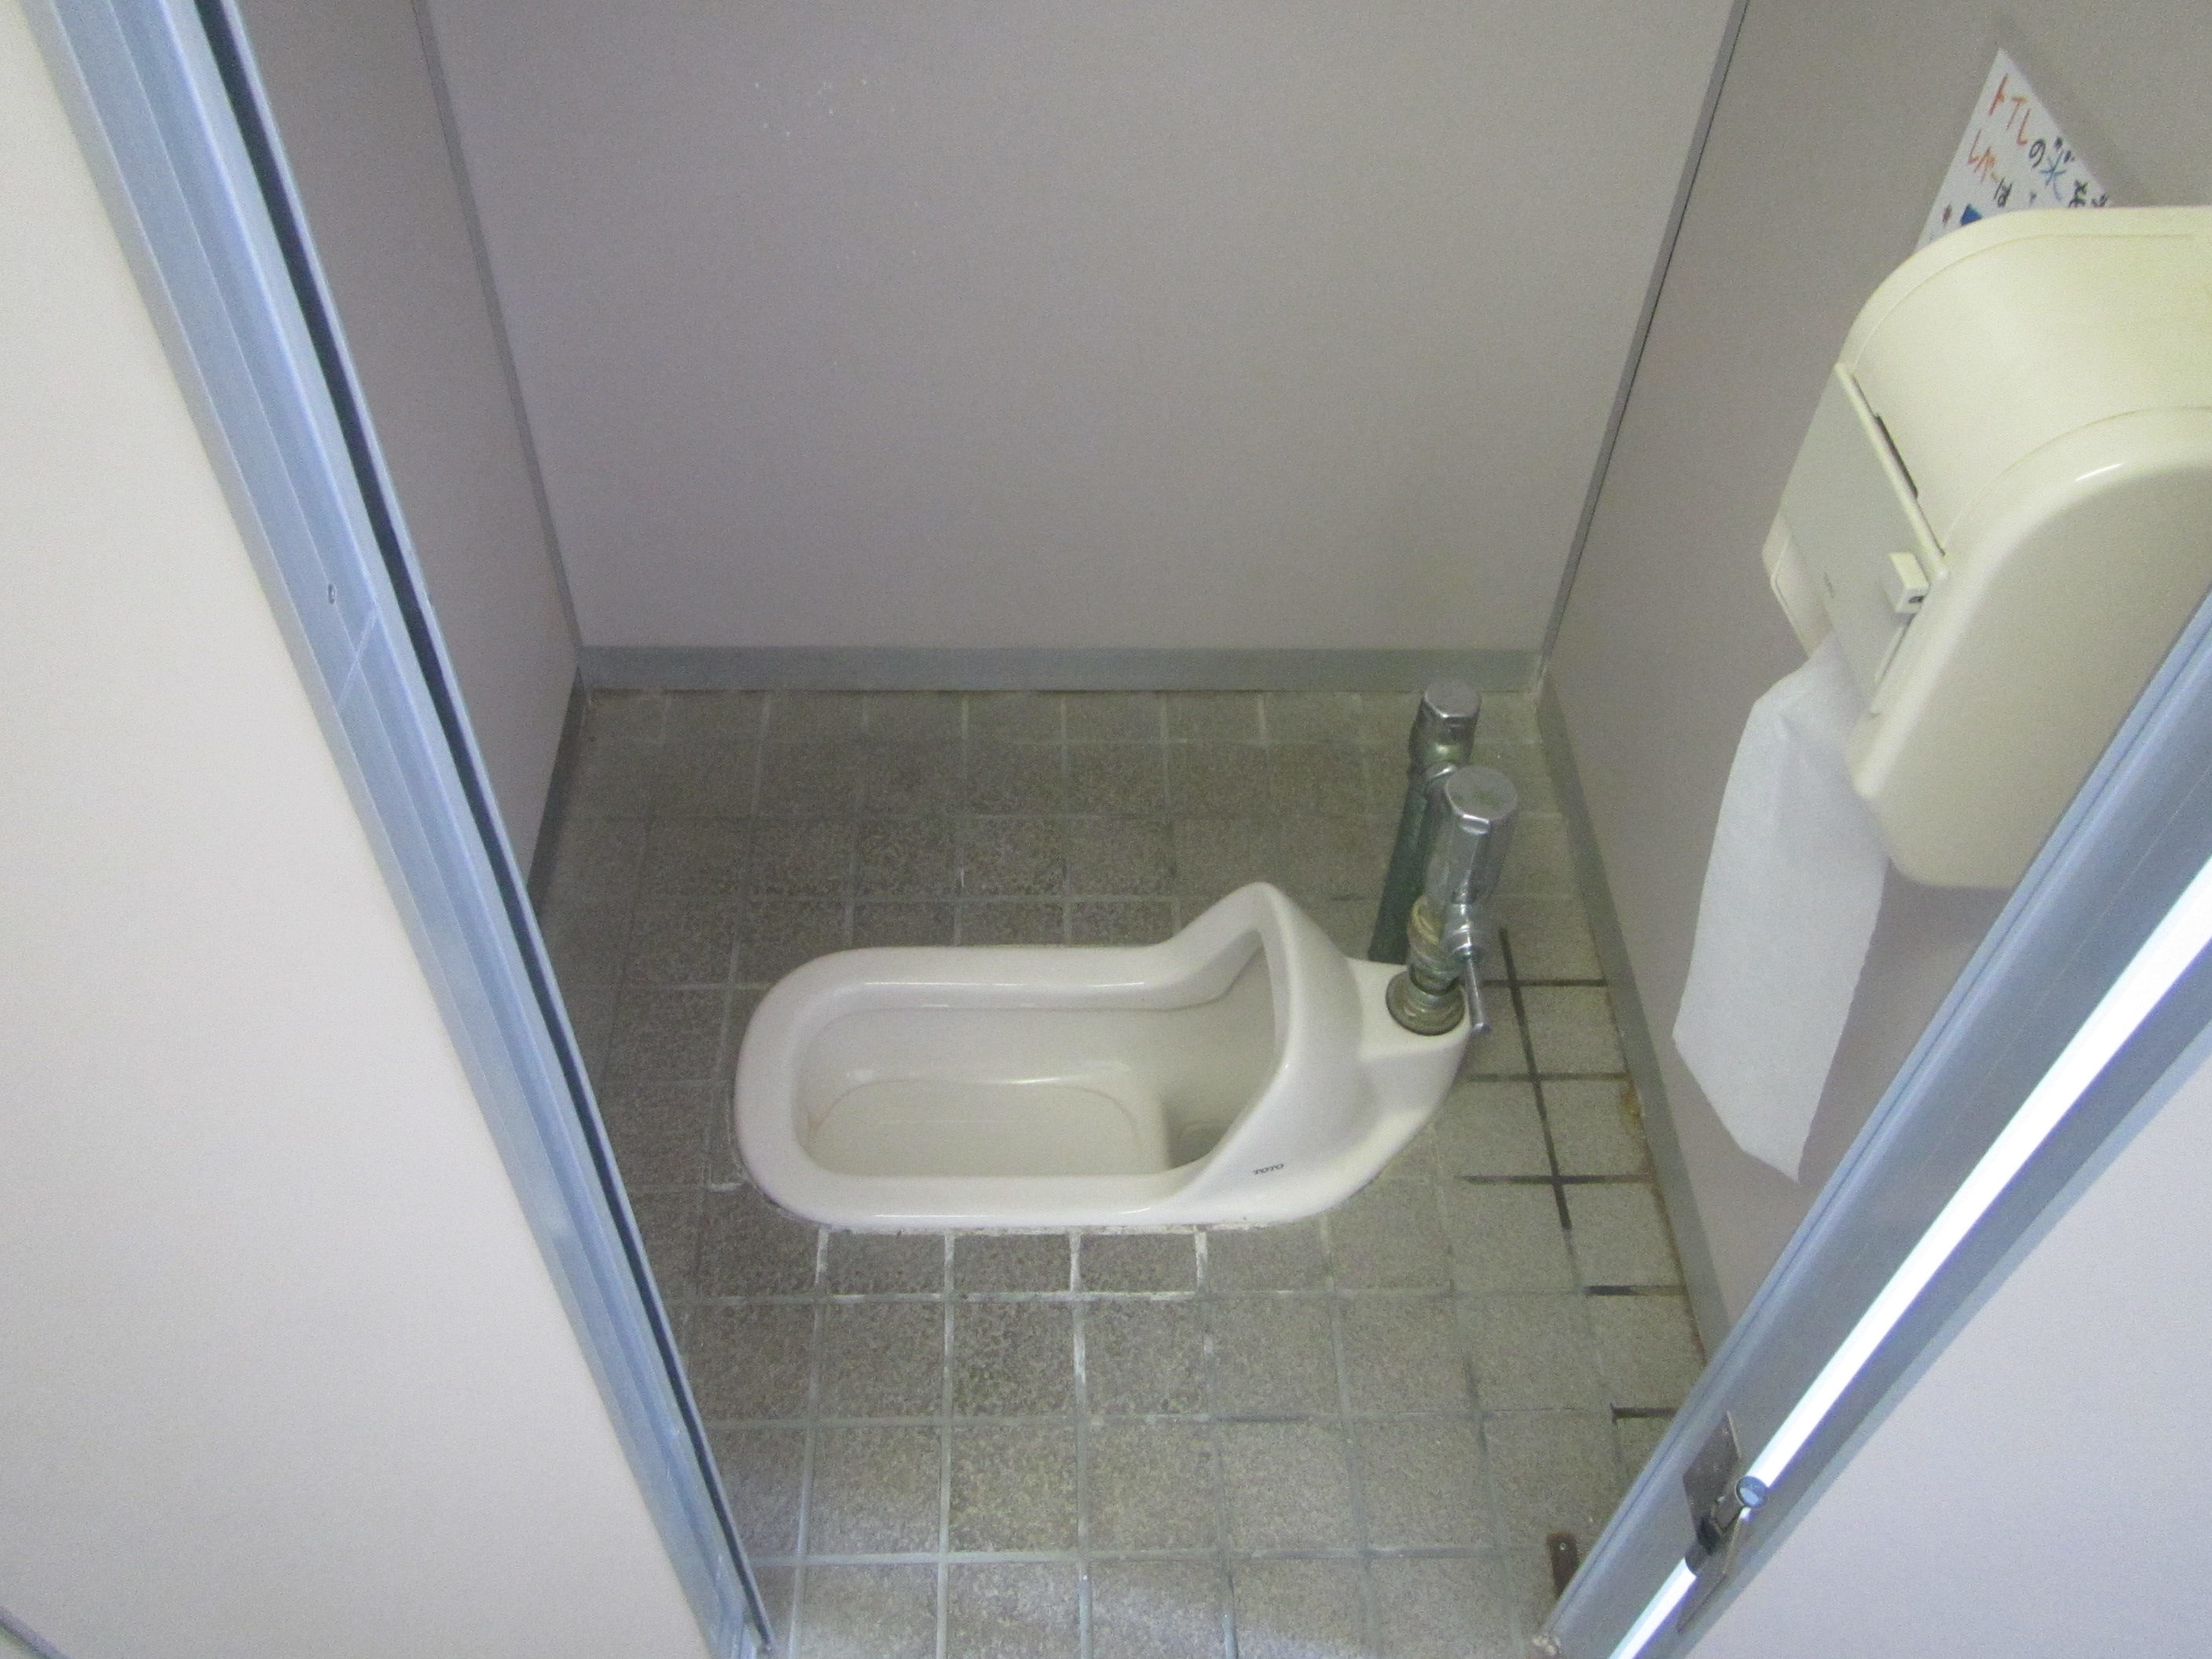 福島市立学校等施設のトイレ洋式化の状況についてお知らせします 福島市